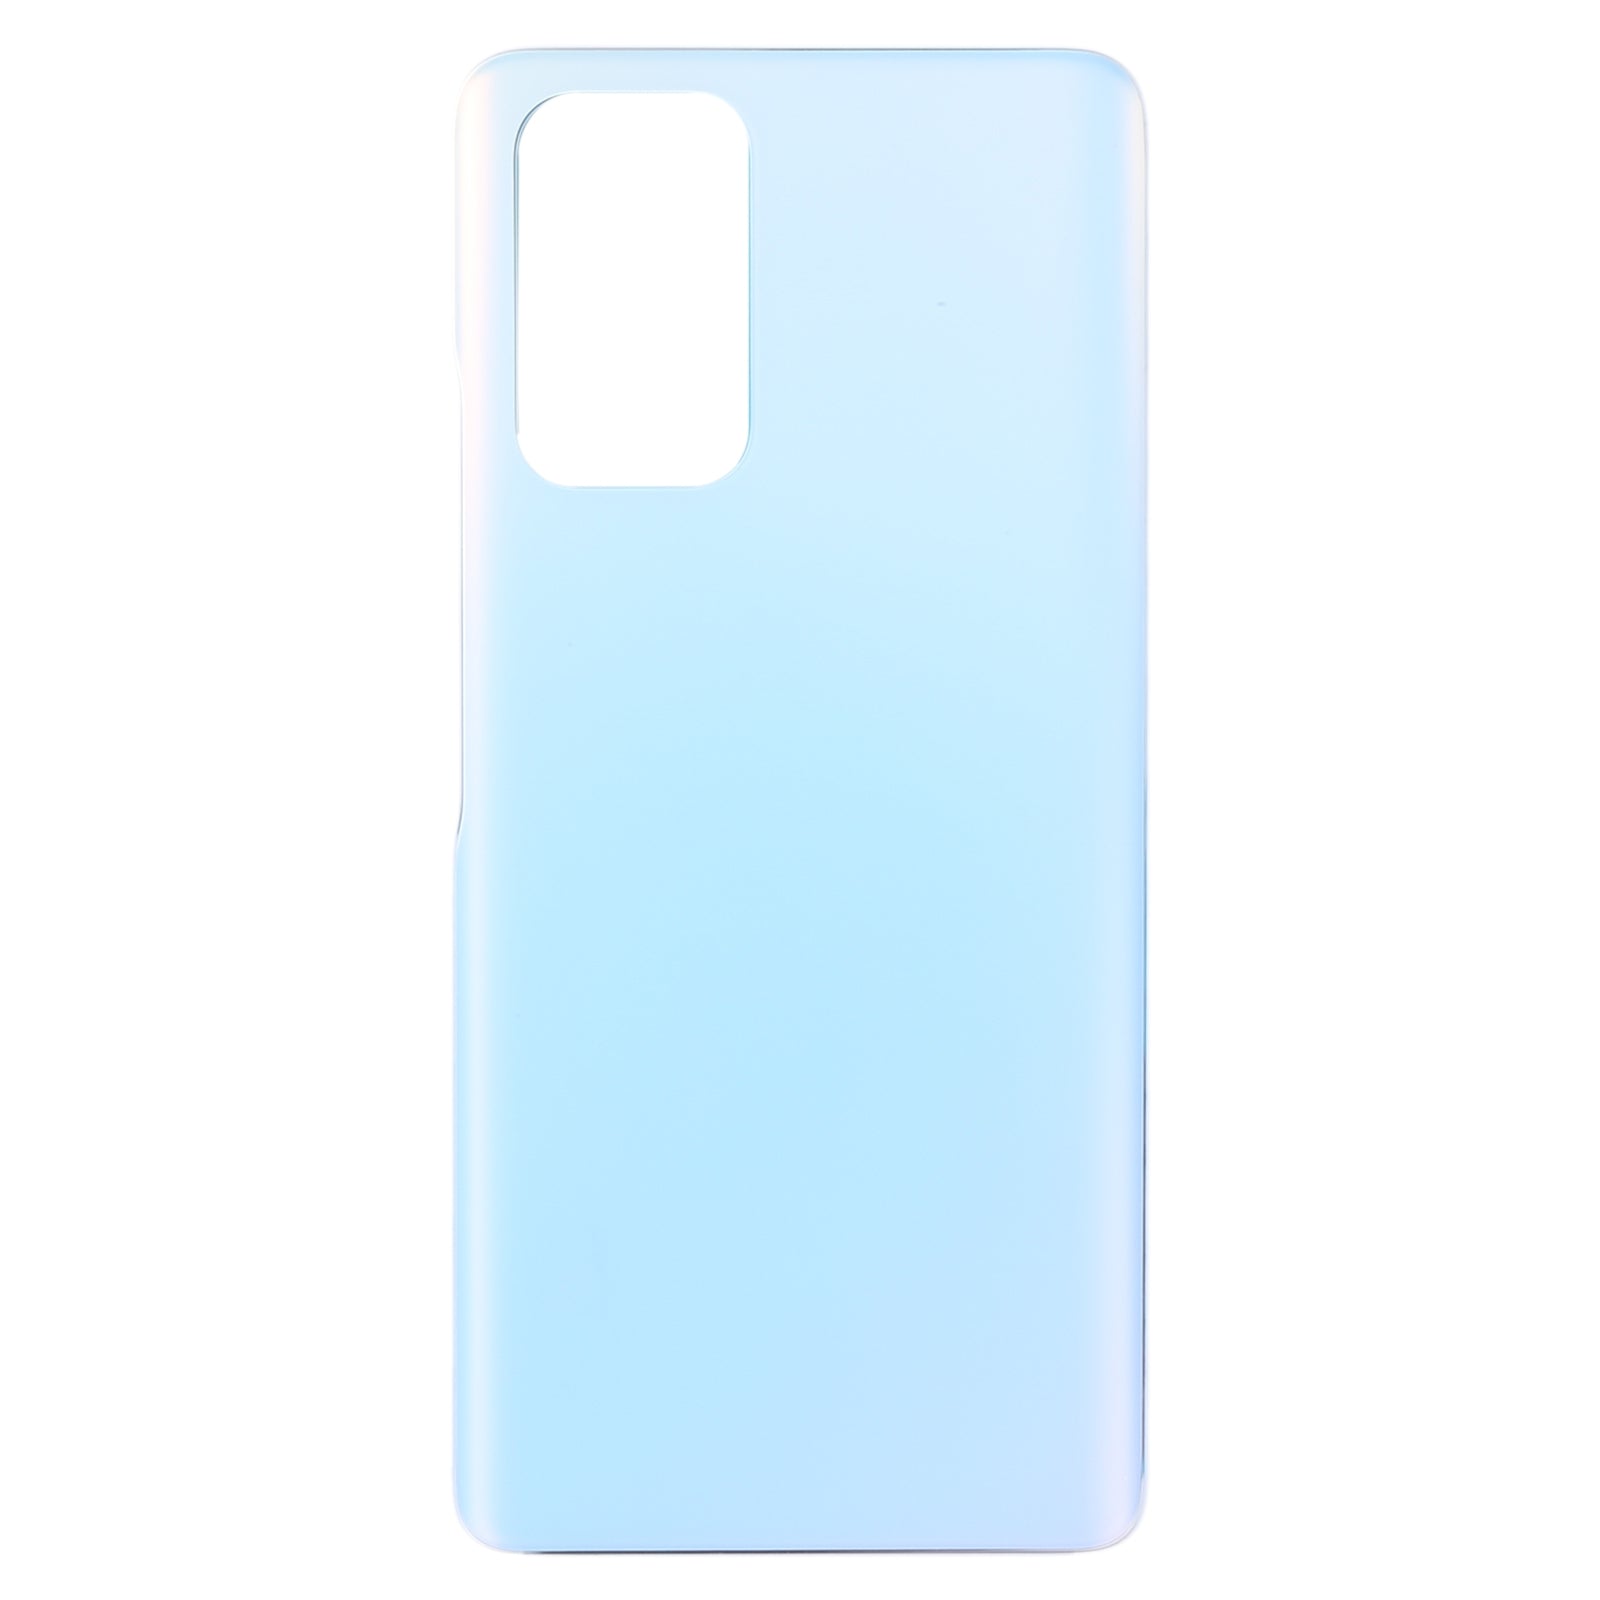 Tapa Bateria Back Cover Xiaomi Redmi Note 10 Pro / Redmi Note 10 Pro Max / Redmi Note 10 Pro India Azul